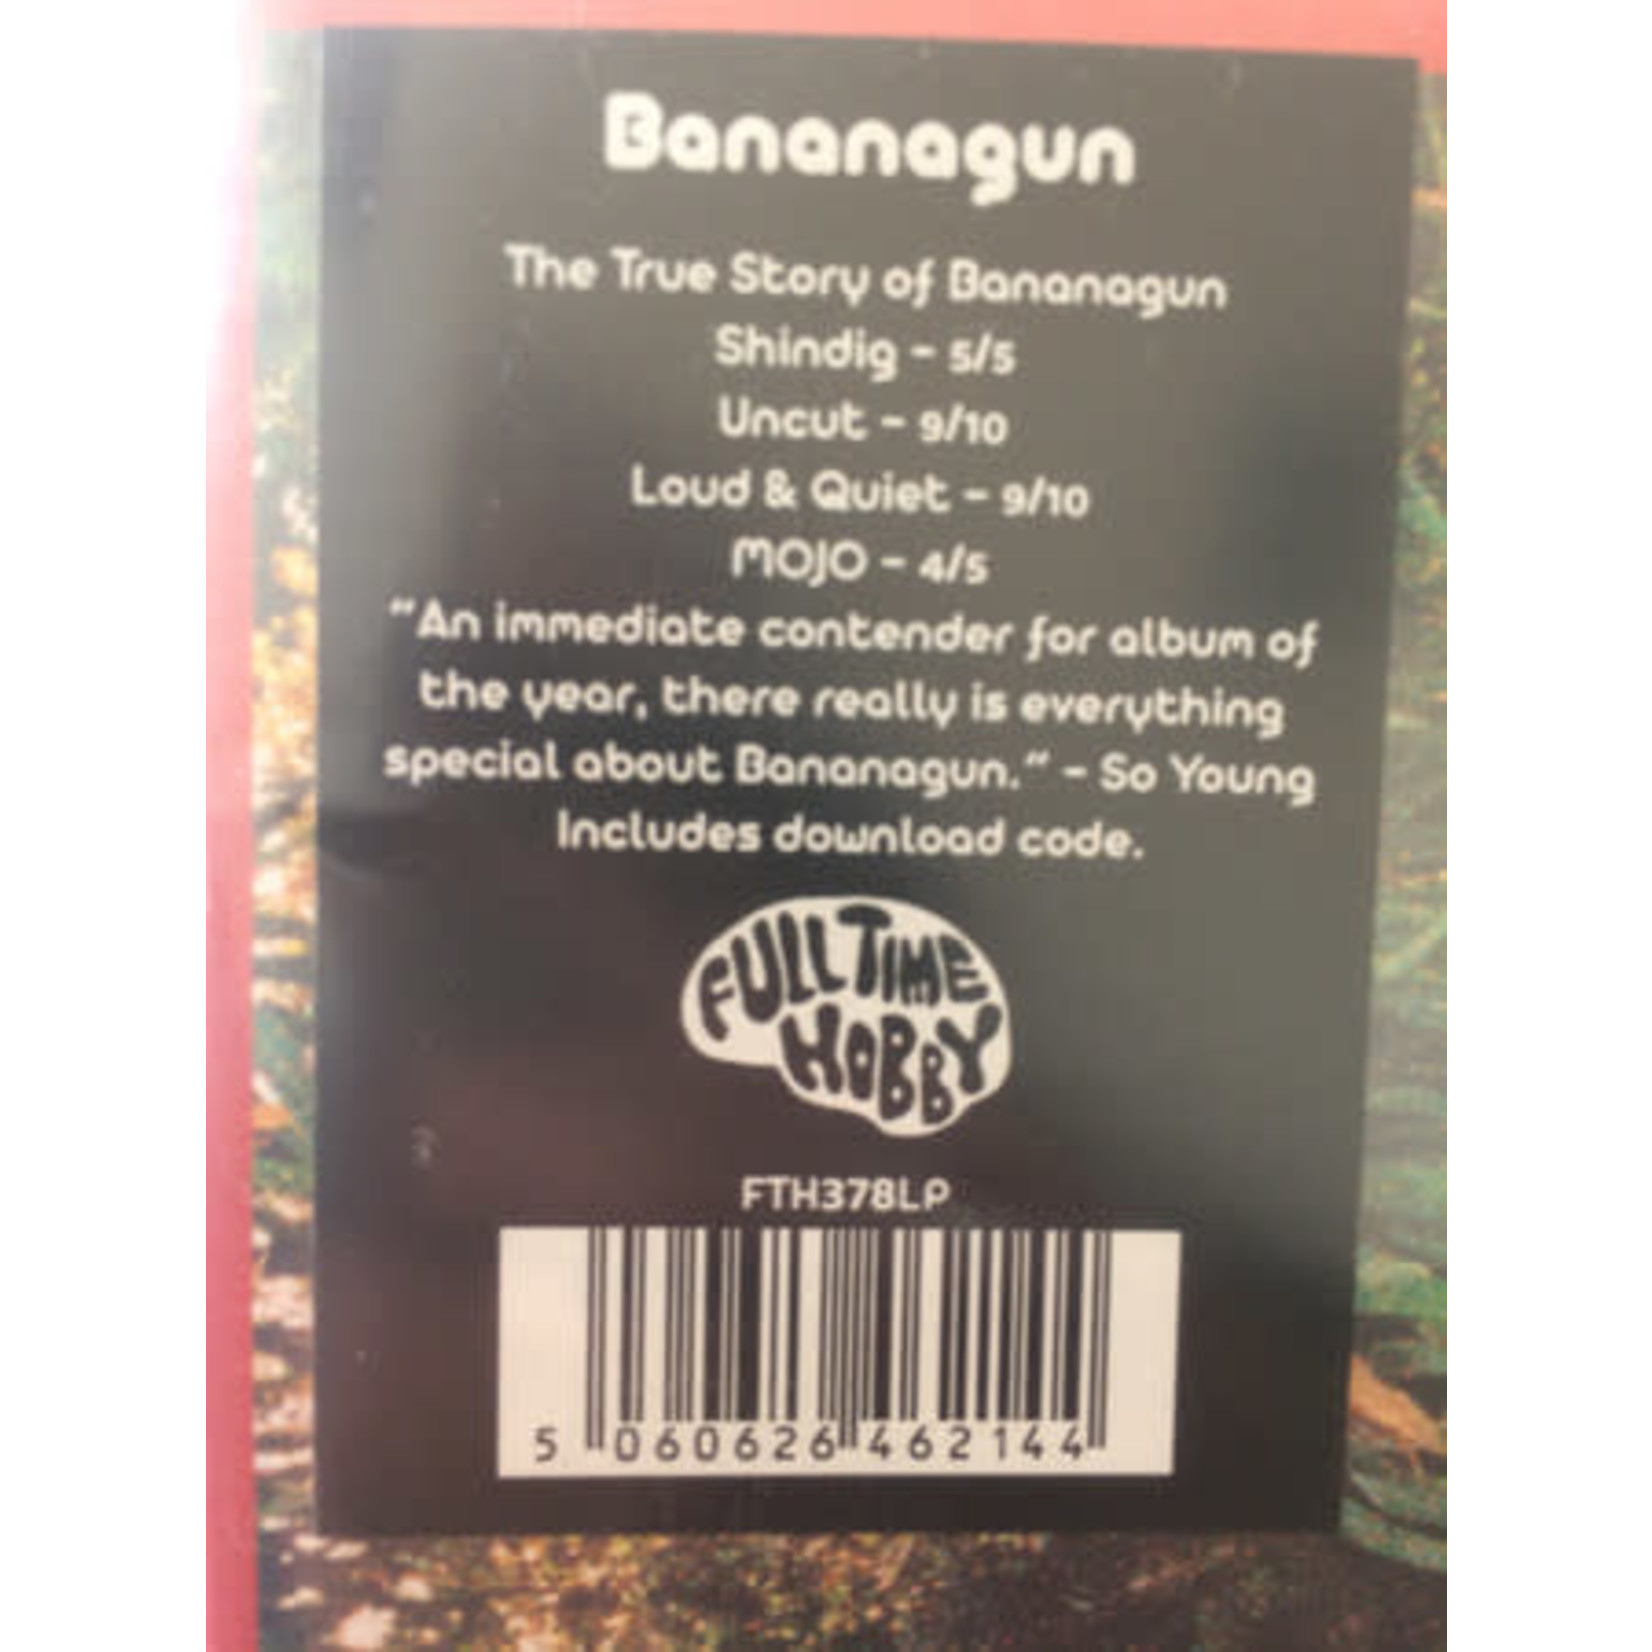 Full Time Hobby Bananagun - The True Story of Bananagun (LP)